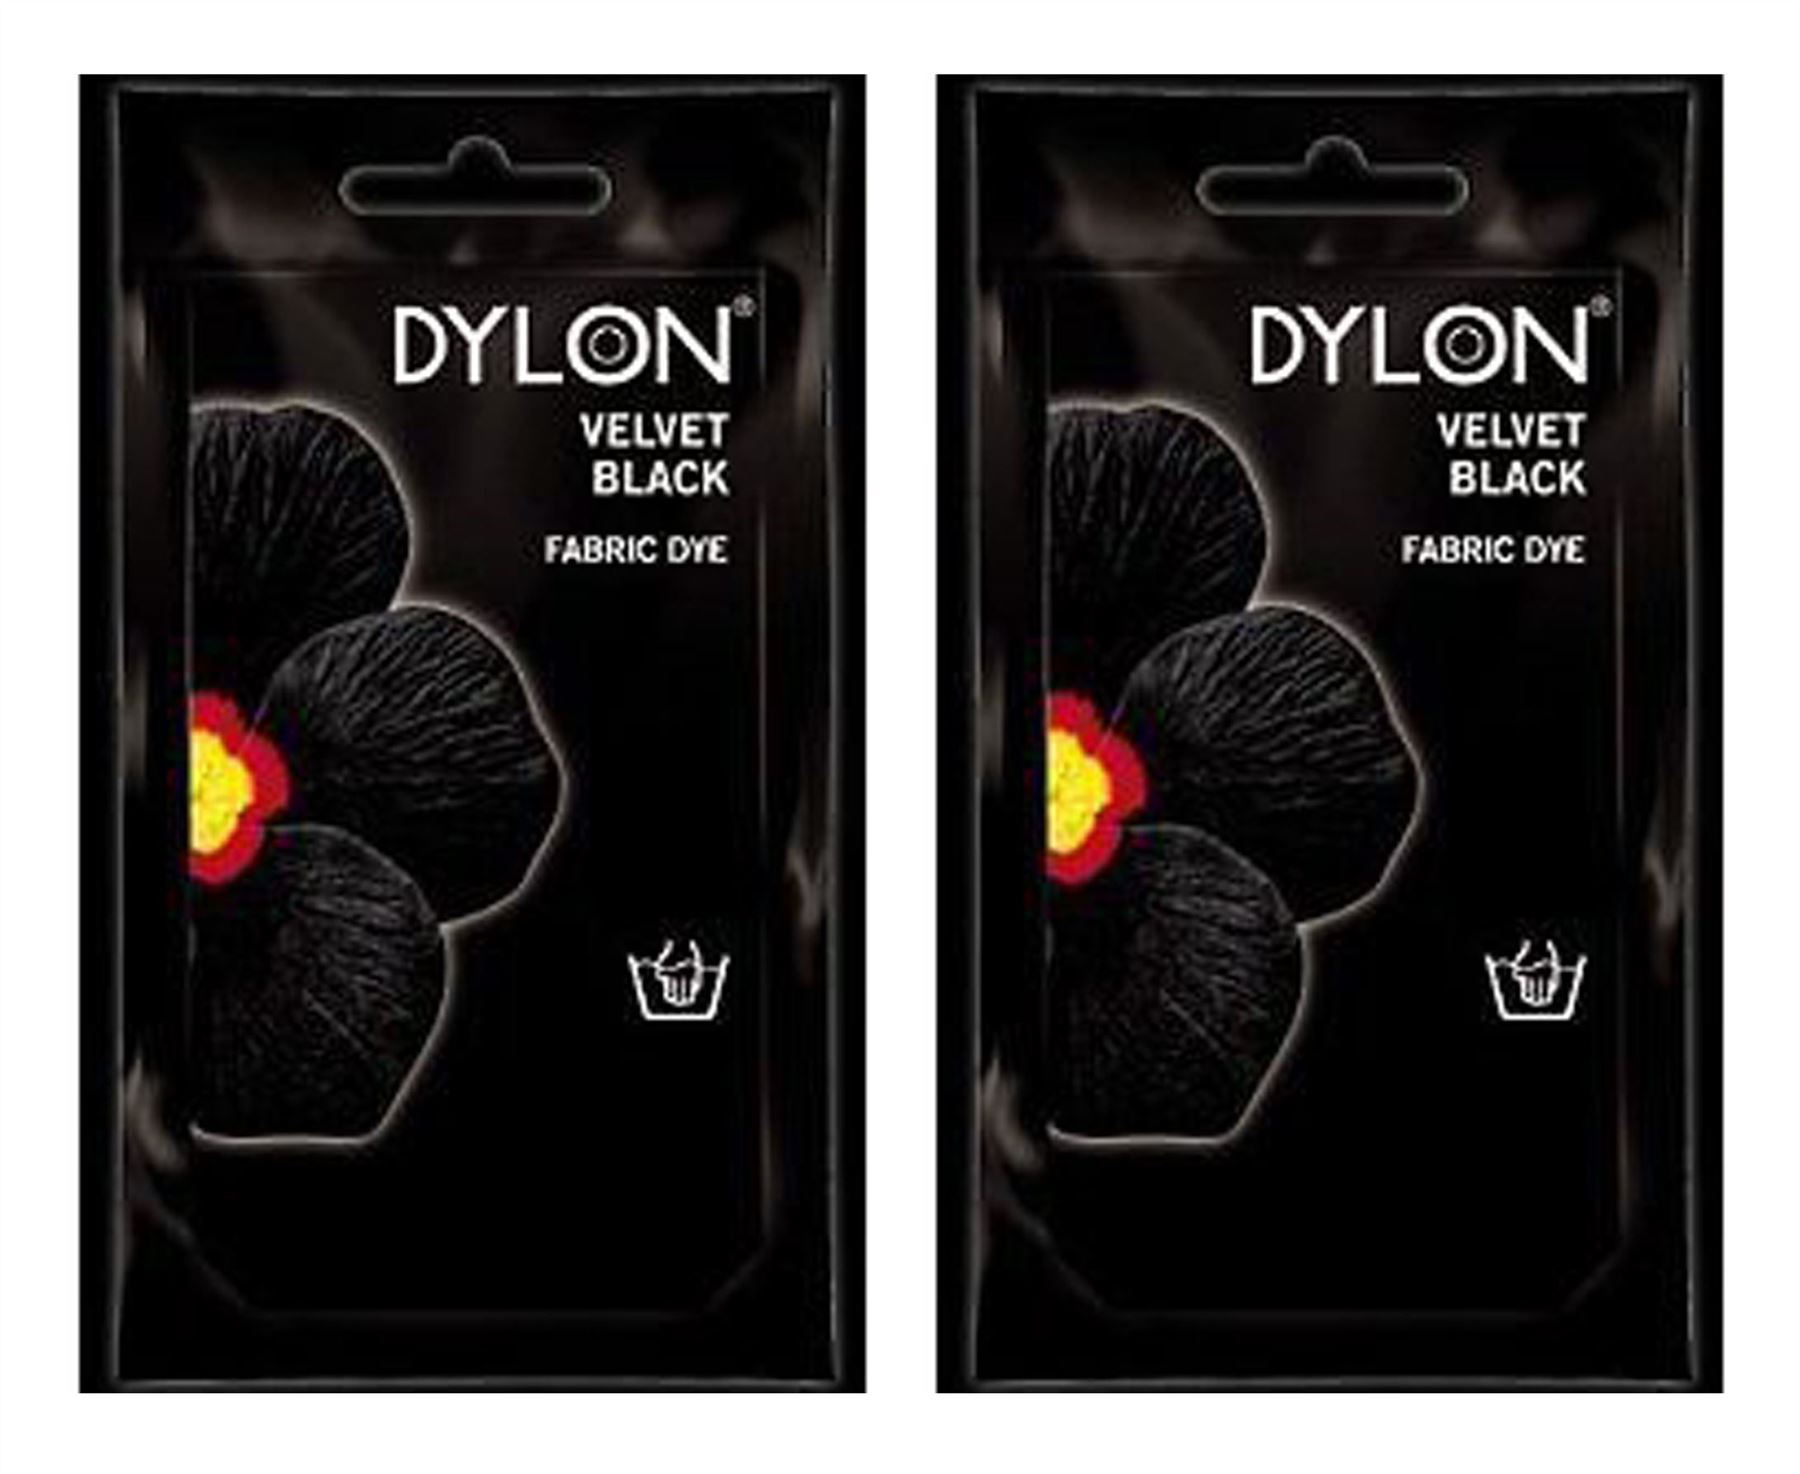 dylon velvet black fabric dye instructions